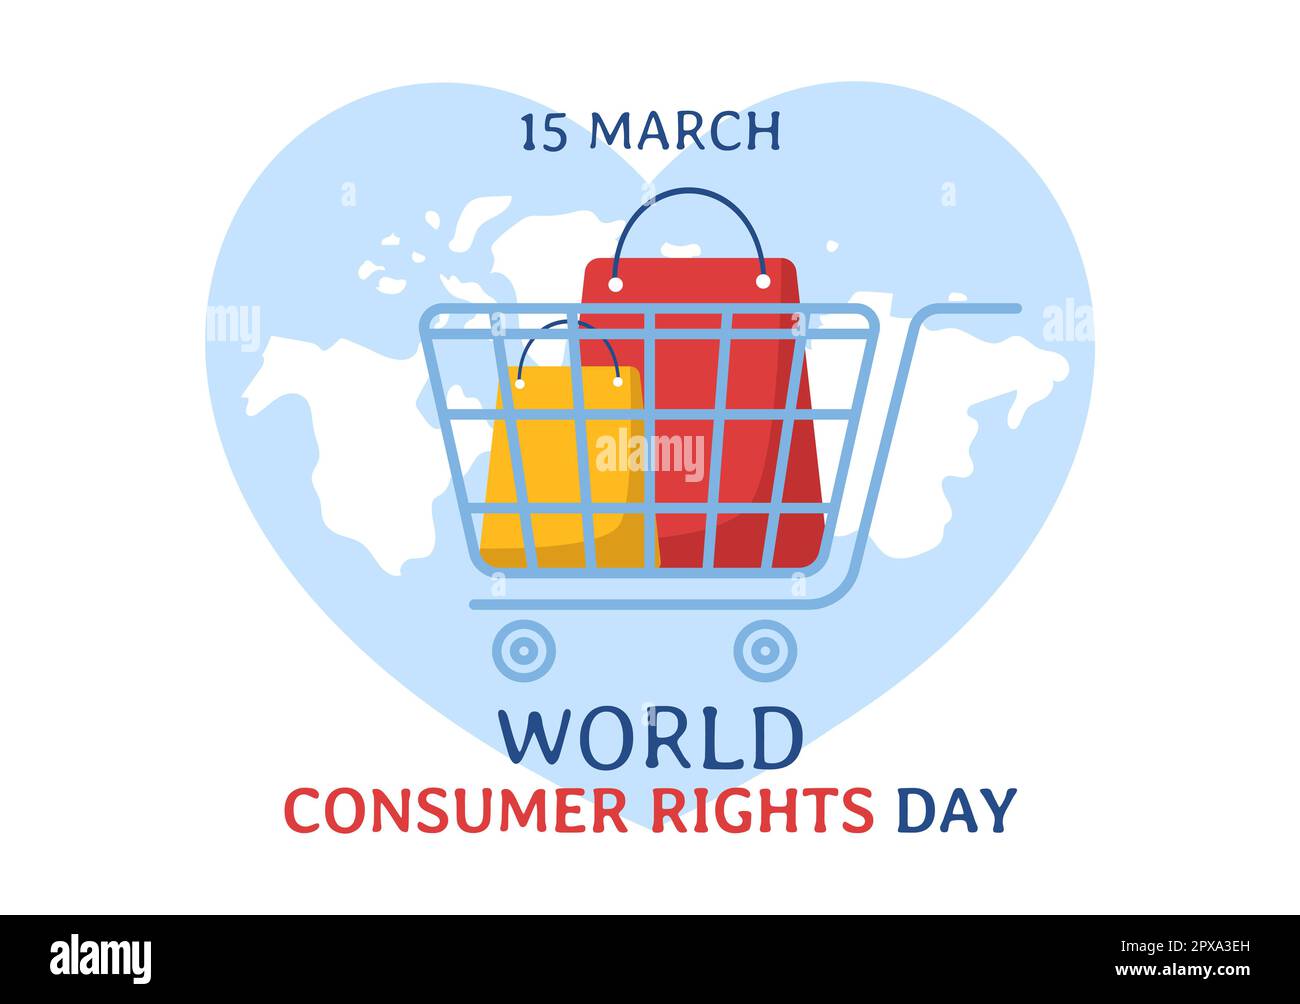 Illustrazione della Giornata mondiale dei diritti dei consumatori con shopping, borse e esigenze dei consumatori per banner Web o landing page in modelli cartoon piano disegnati a mano Foto Stock